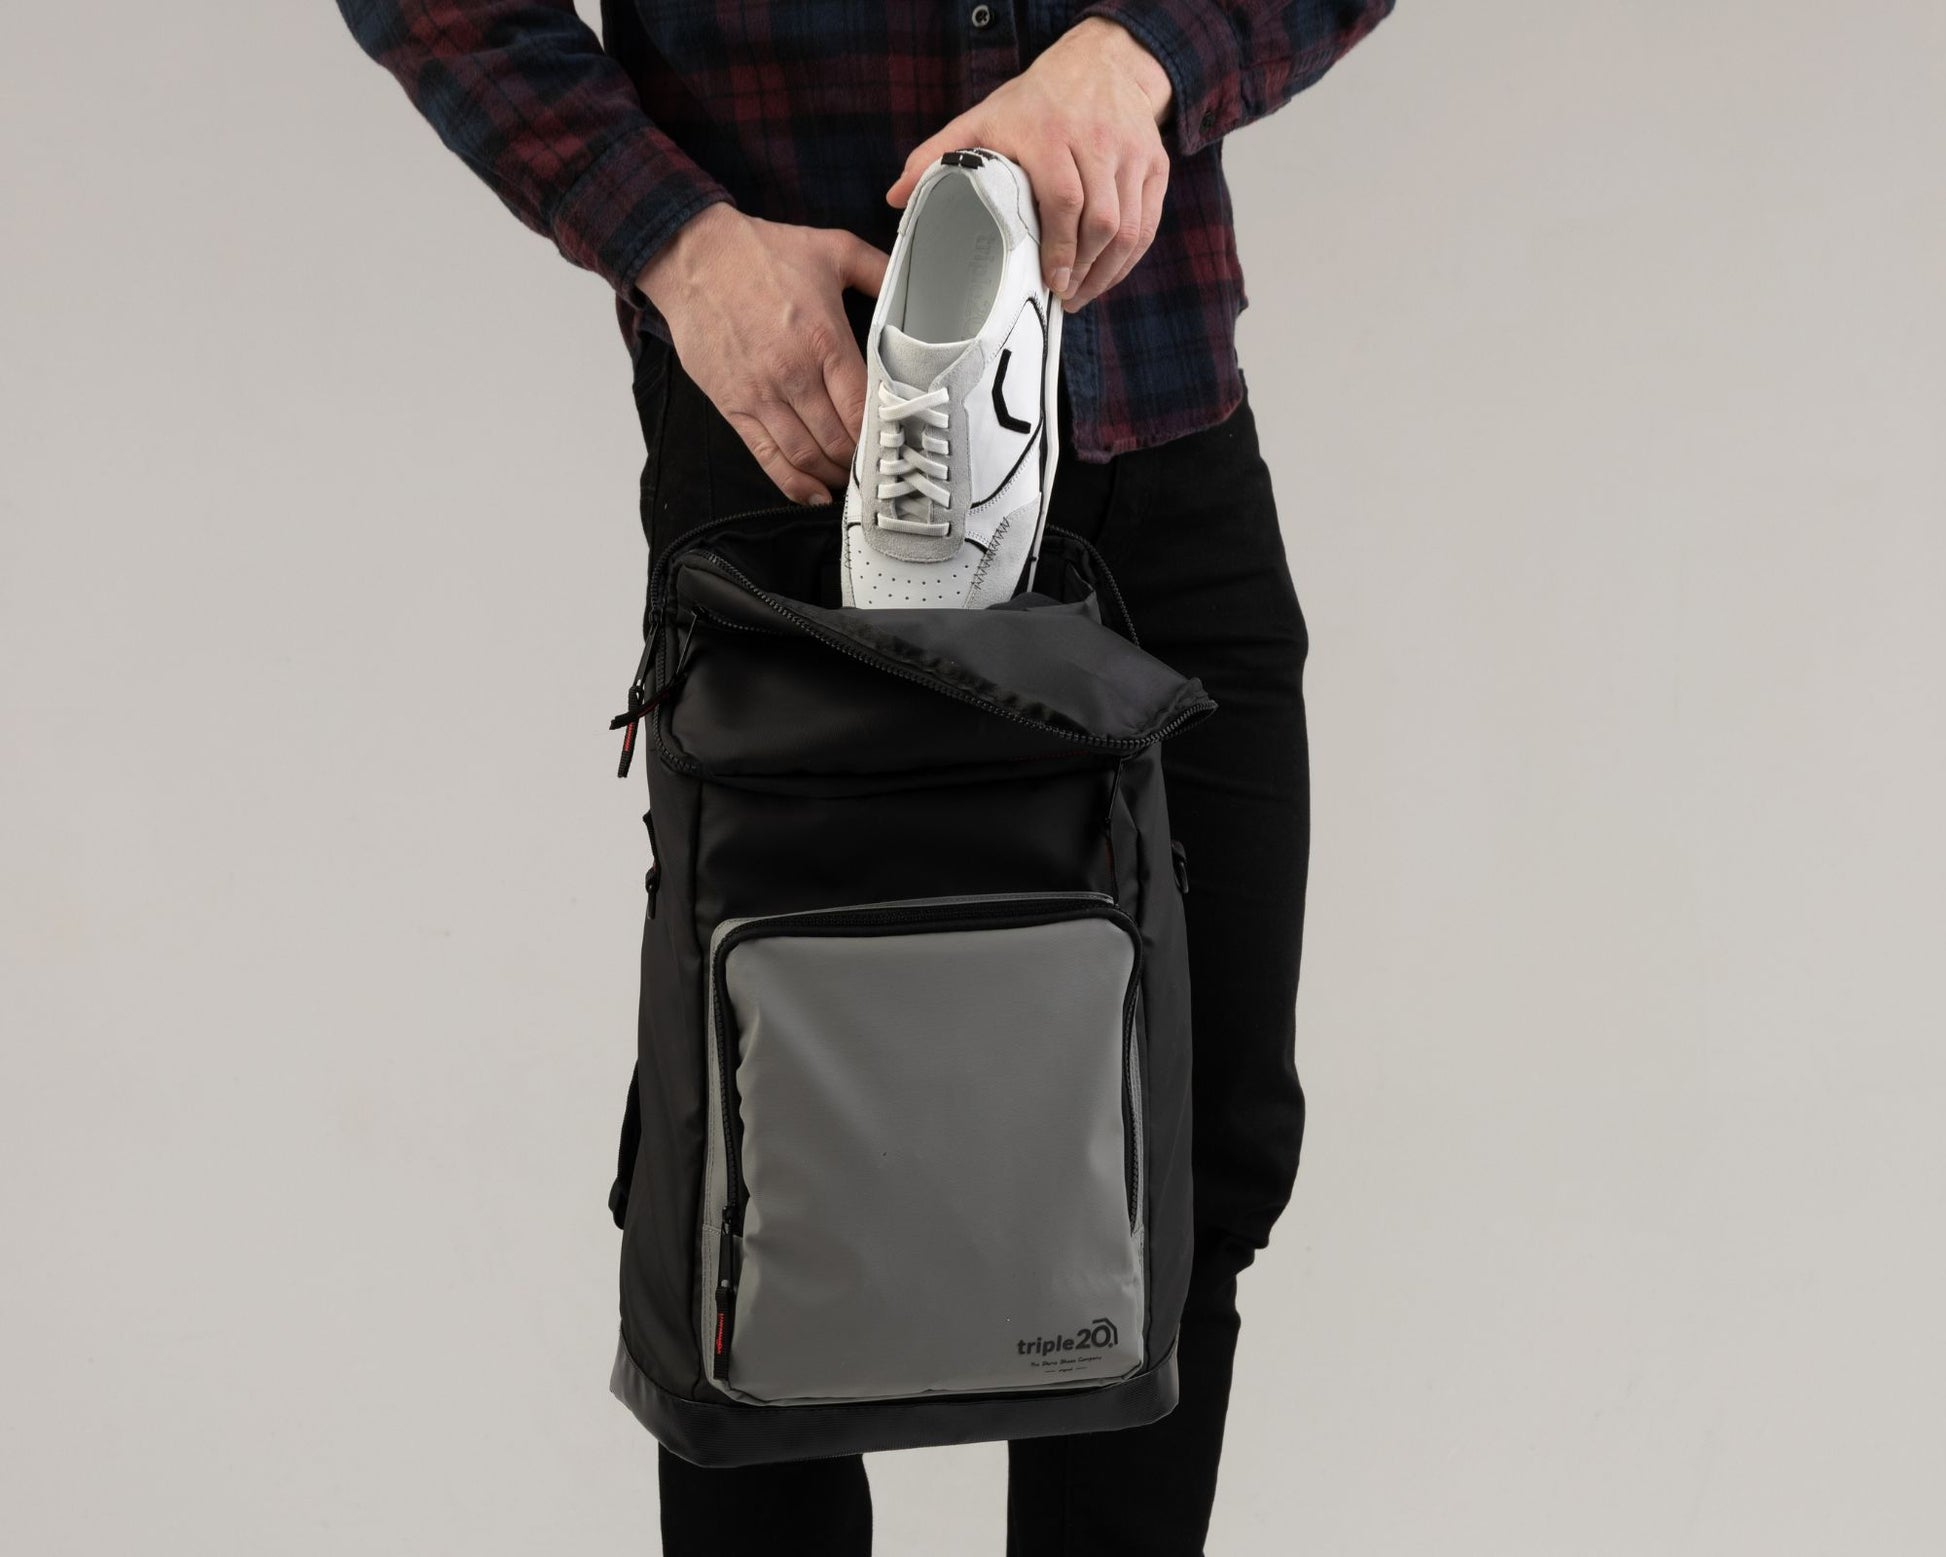 Produktfoto eines besonderen Schuhrucksacks für Dartschuhe. Auf dem Bild zeigt ein männliches Model, wie einfach sich genau ein Paar Dartschuhe im Rucksack durch die breite Öffnung verstauen lässt. Der Rucksack ist schwarz-grau mit feurig roten, sportiven Details.